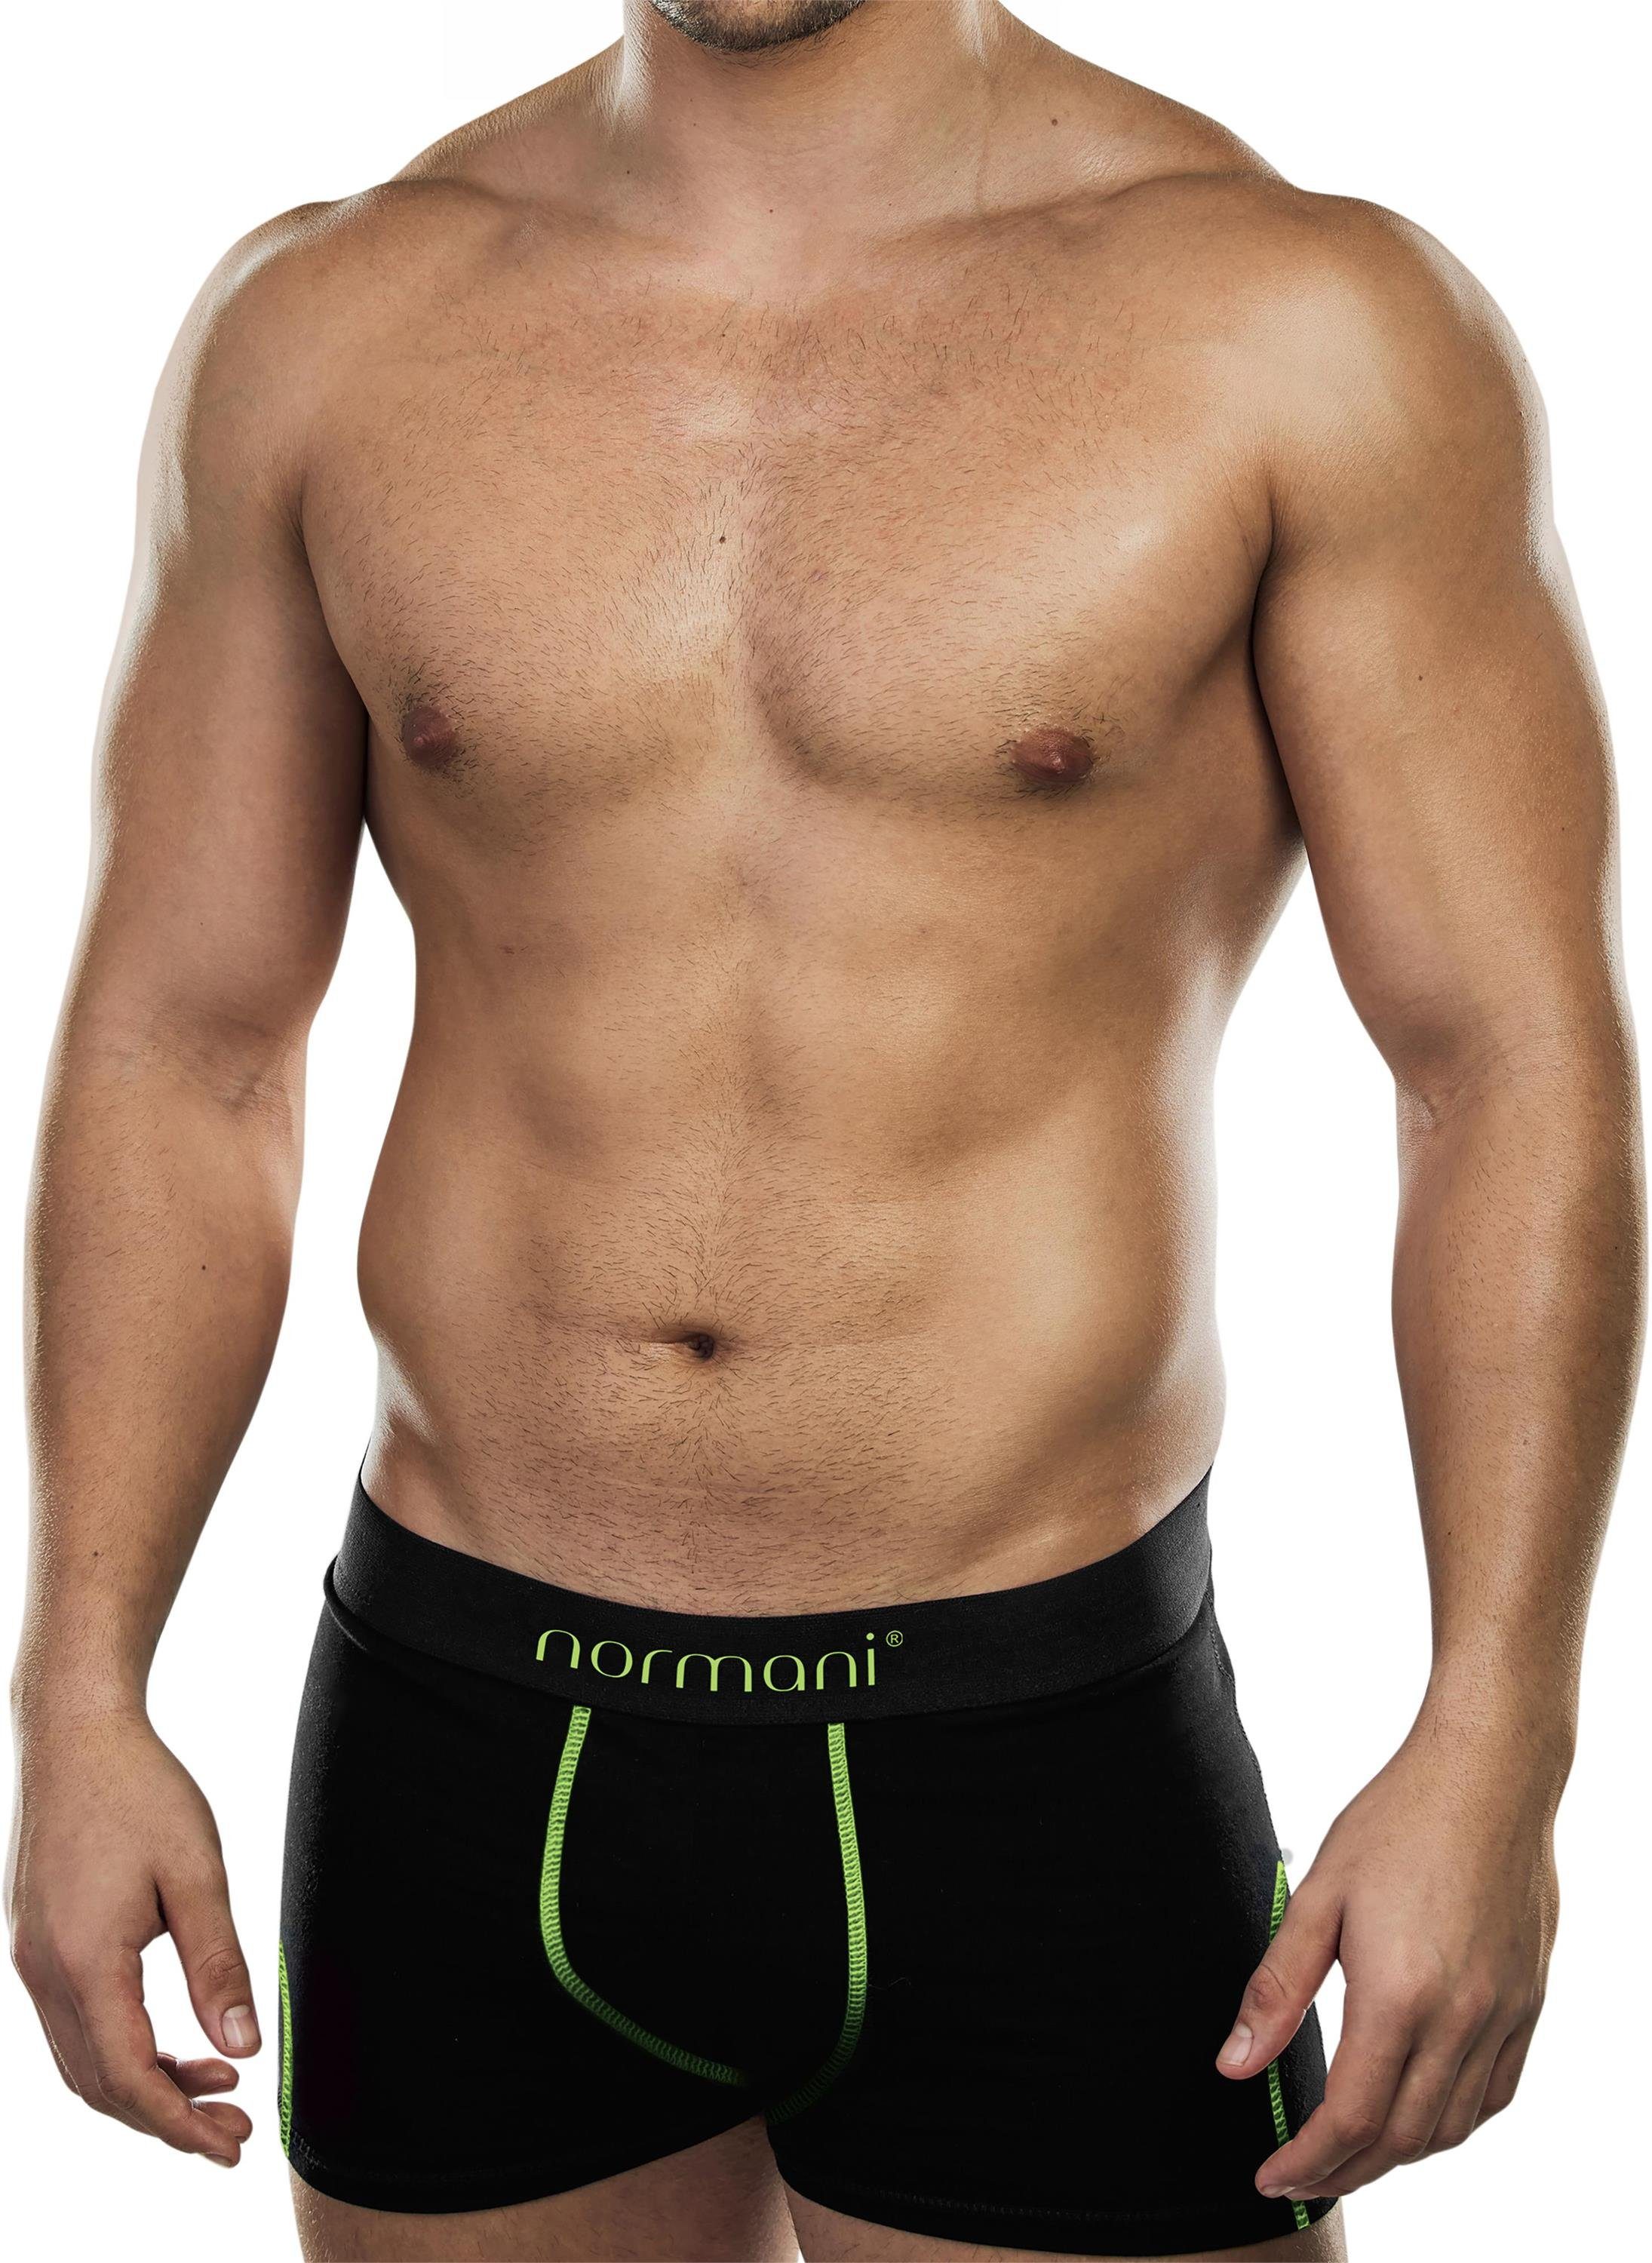 normani Boxershorts 6 weiche Boxershorts aus Baumwolle Unterhose aus atmungsaktiver Baumwolle für Männer Grün